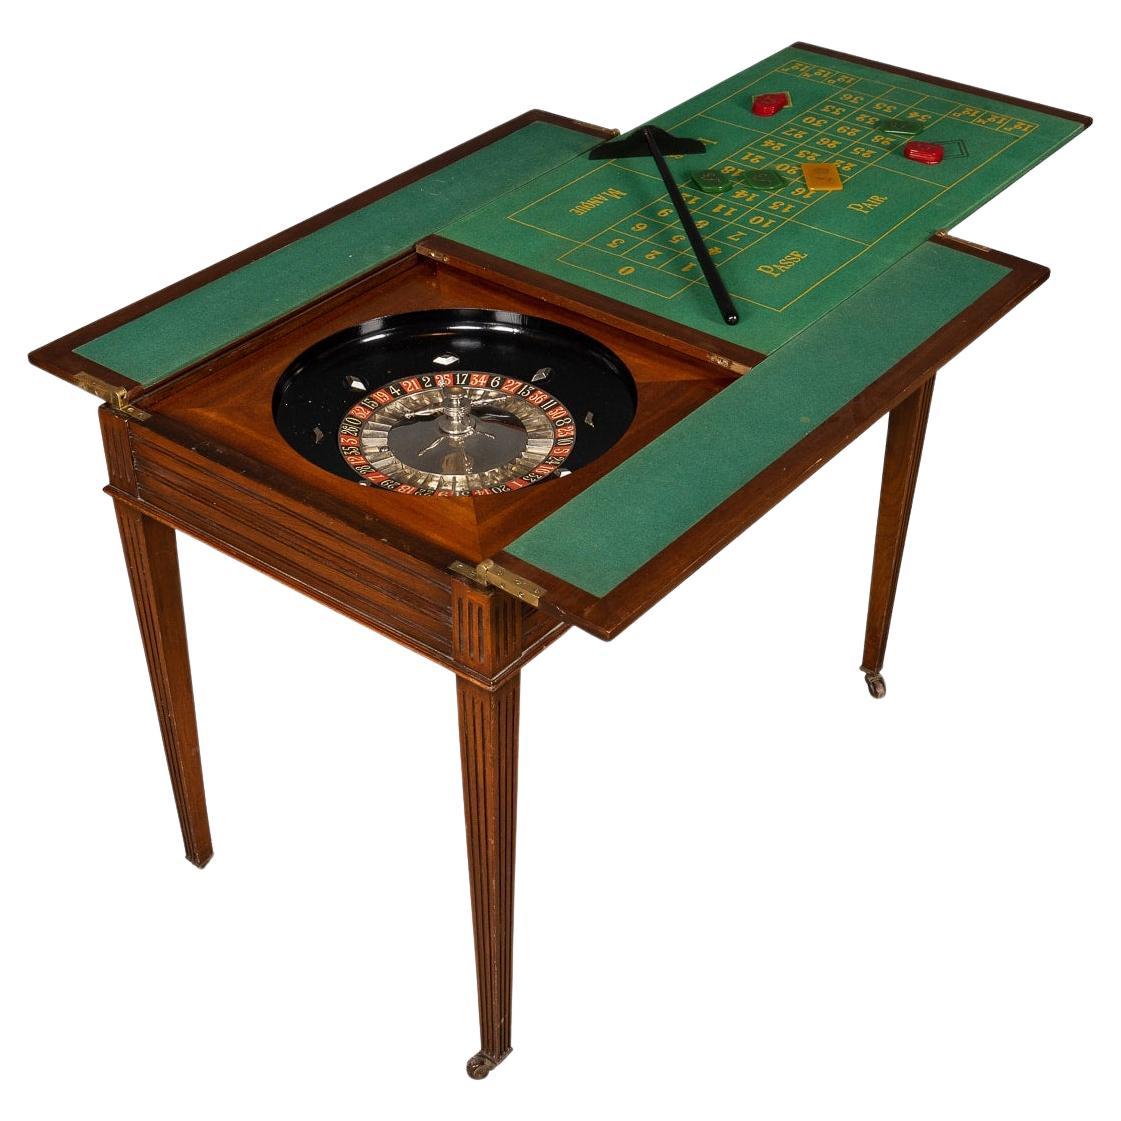 20th Century Edwardian Mahogany Gaming Table, circa 1900